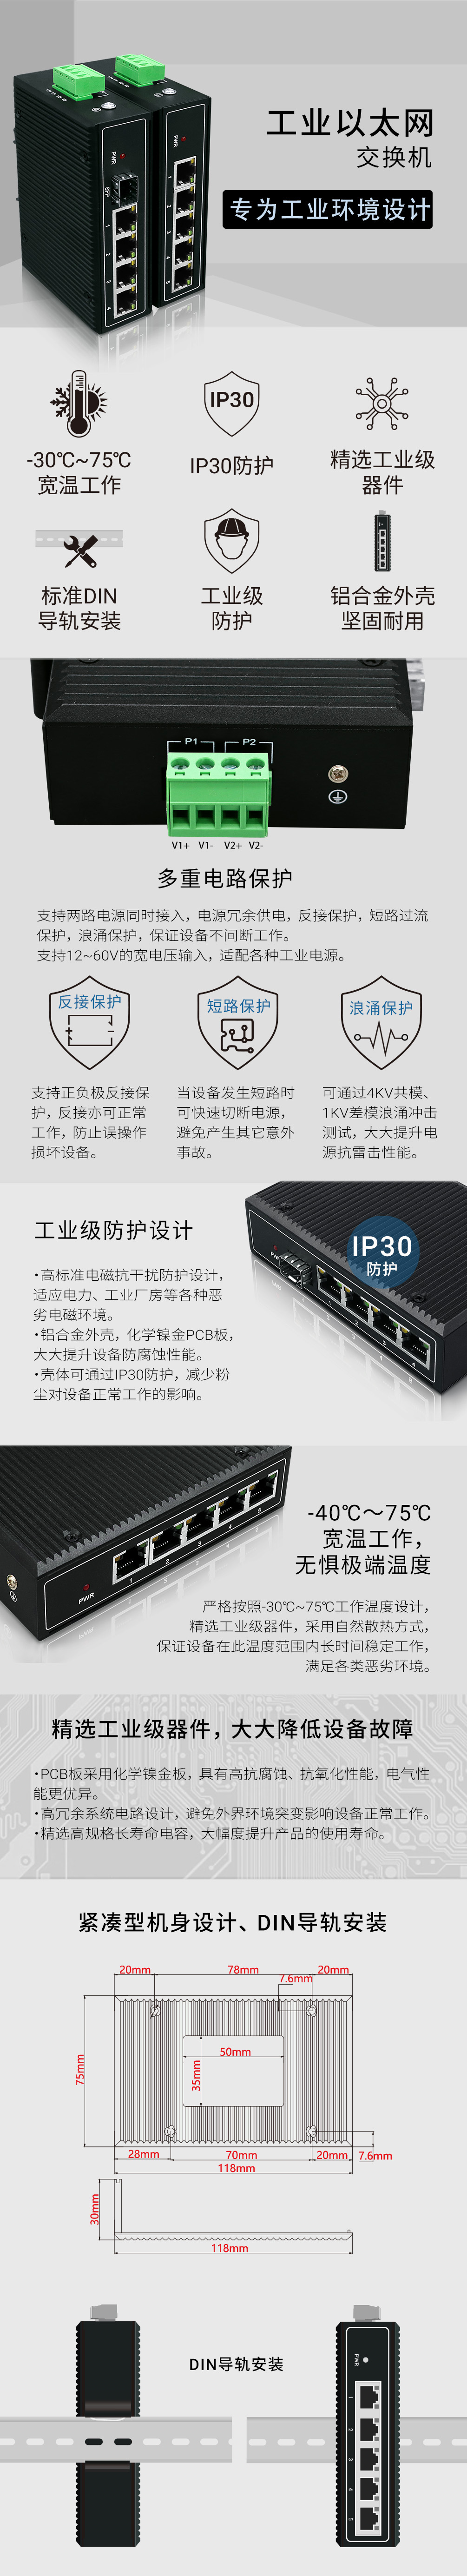 YN-SG105工业以太网交换机